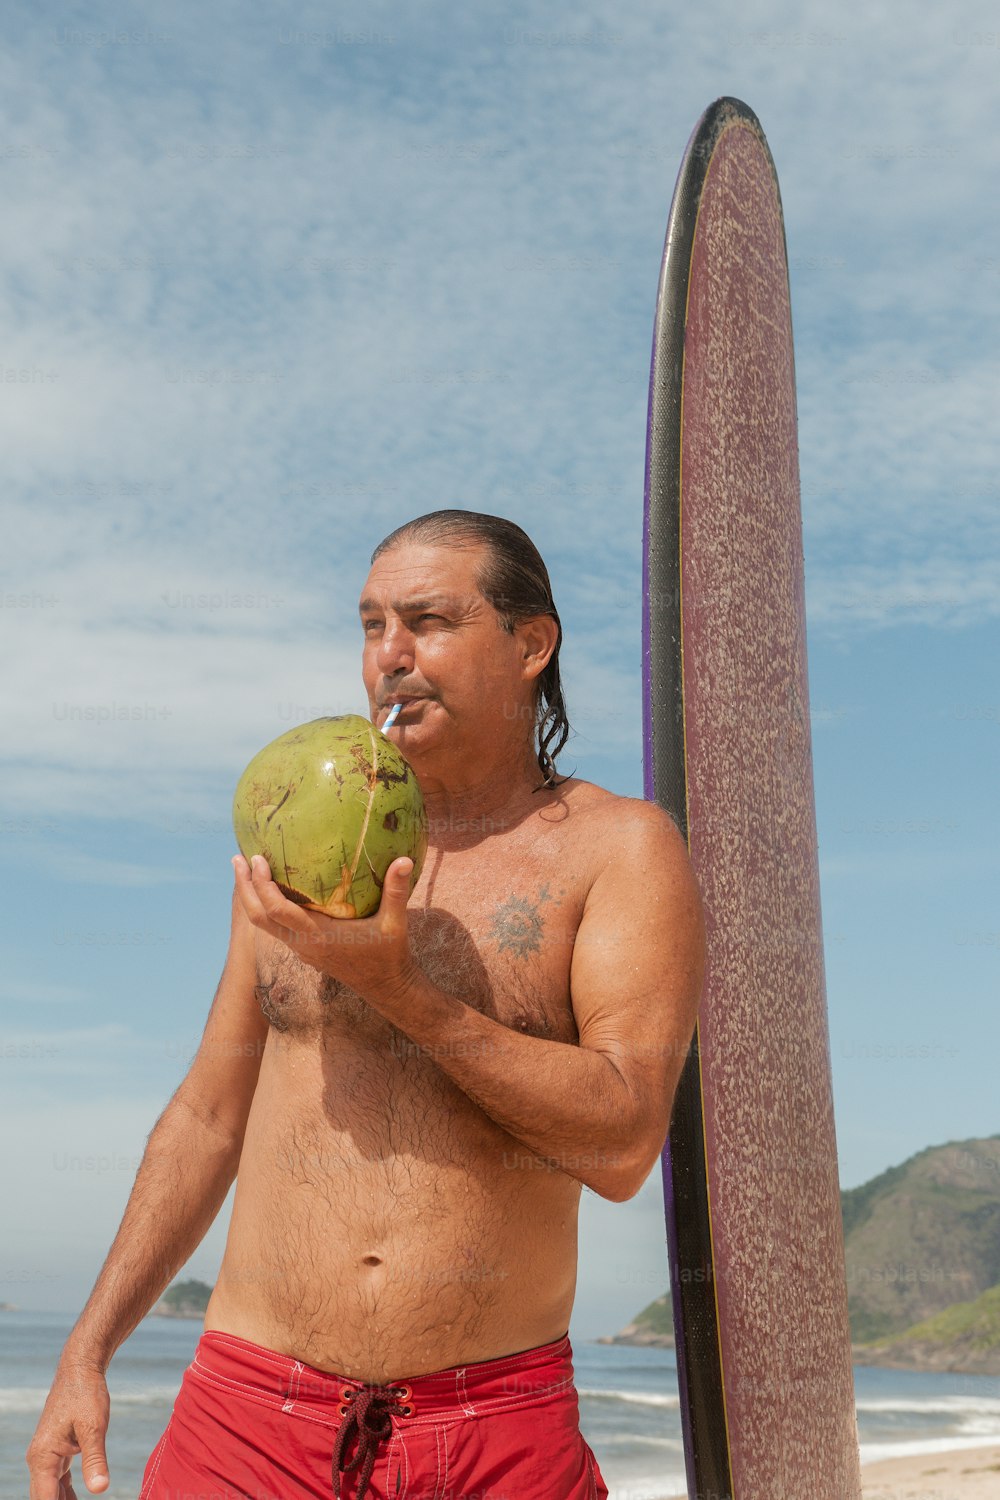 a man standing on a beach next to a surfboard